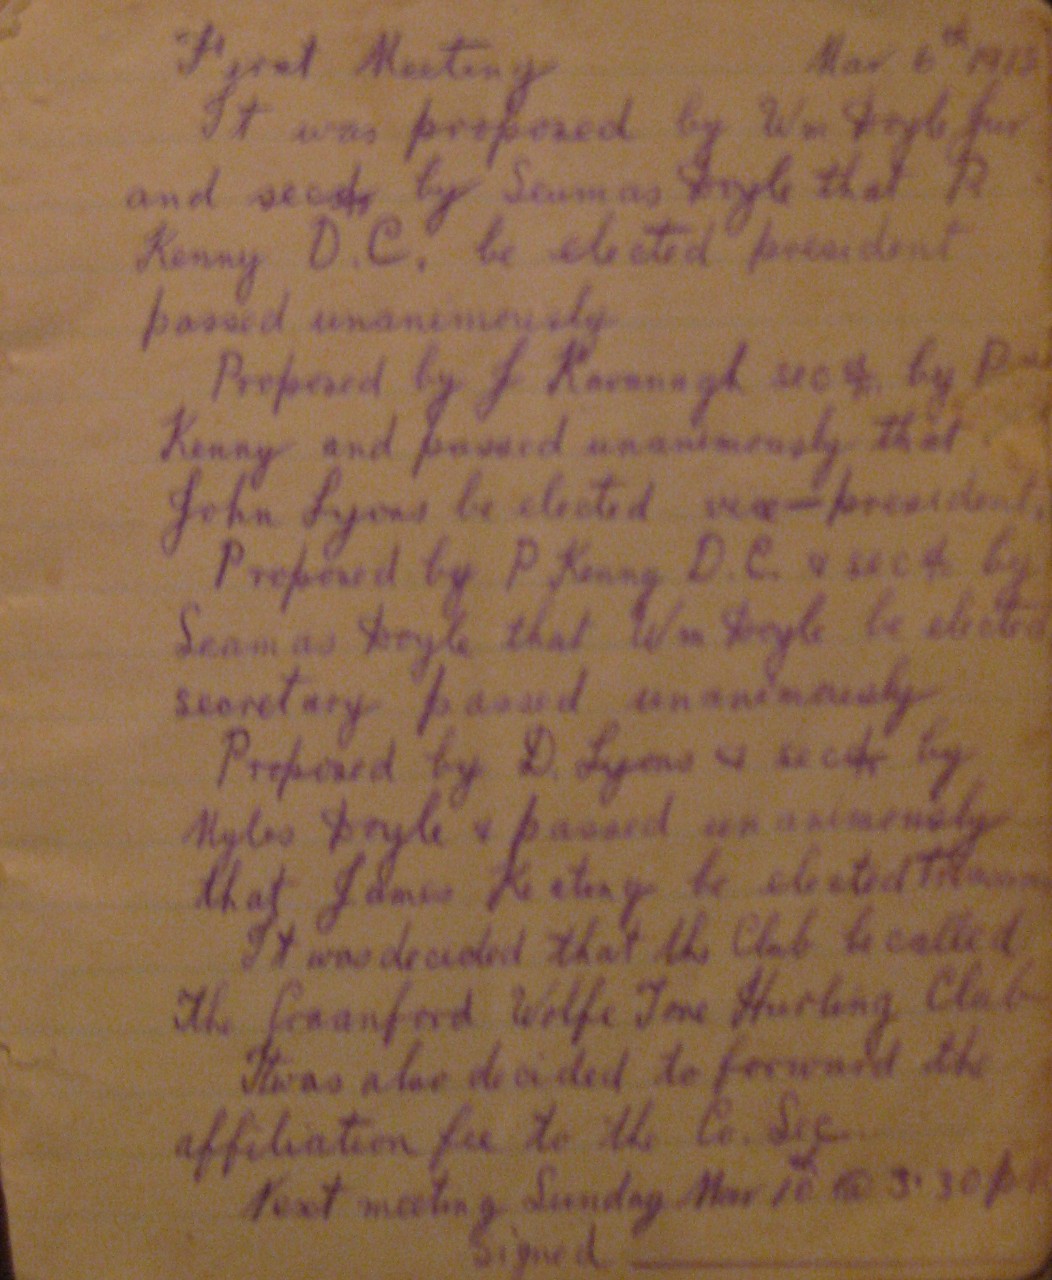 An old, handwritten document